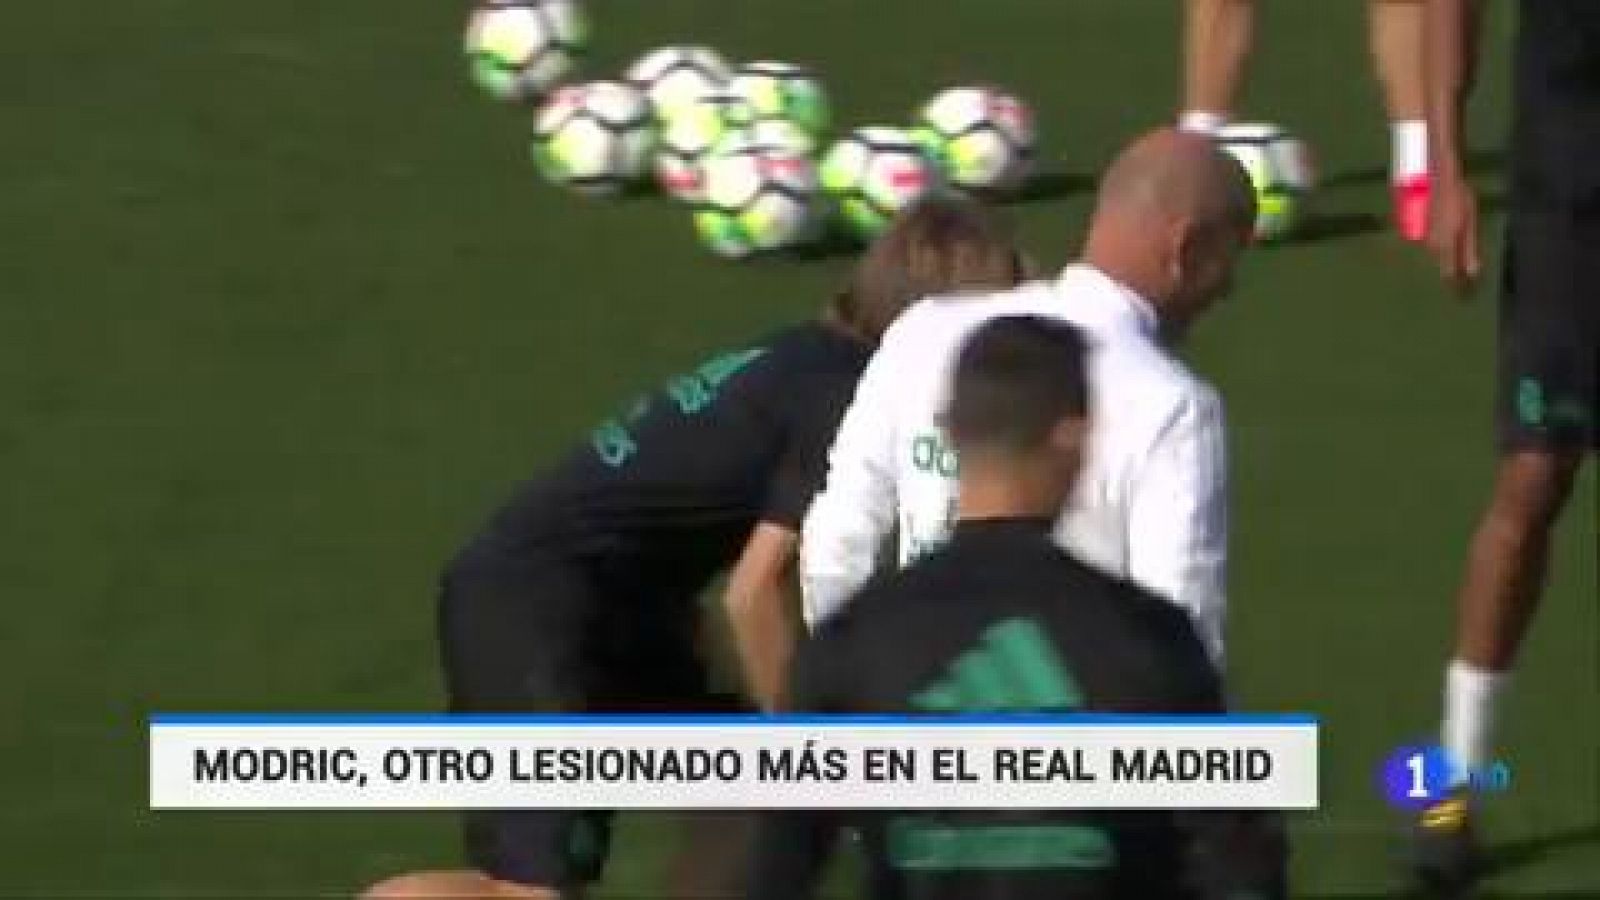 Modric, nuevo lesionado en el Real Madrid